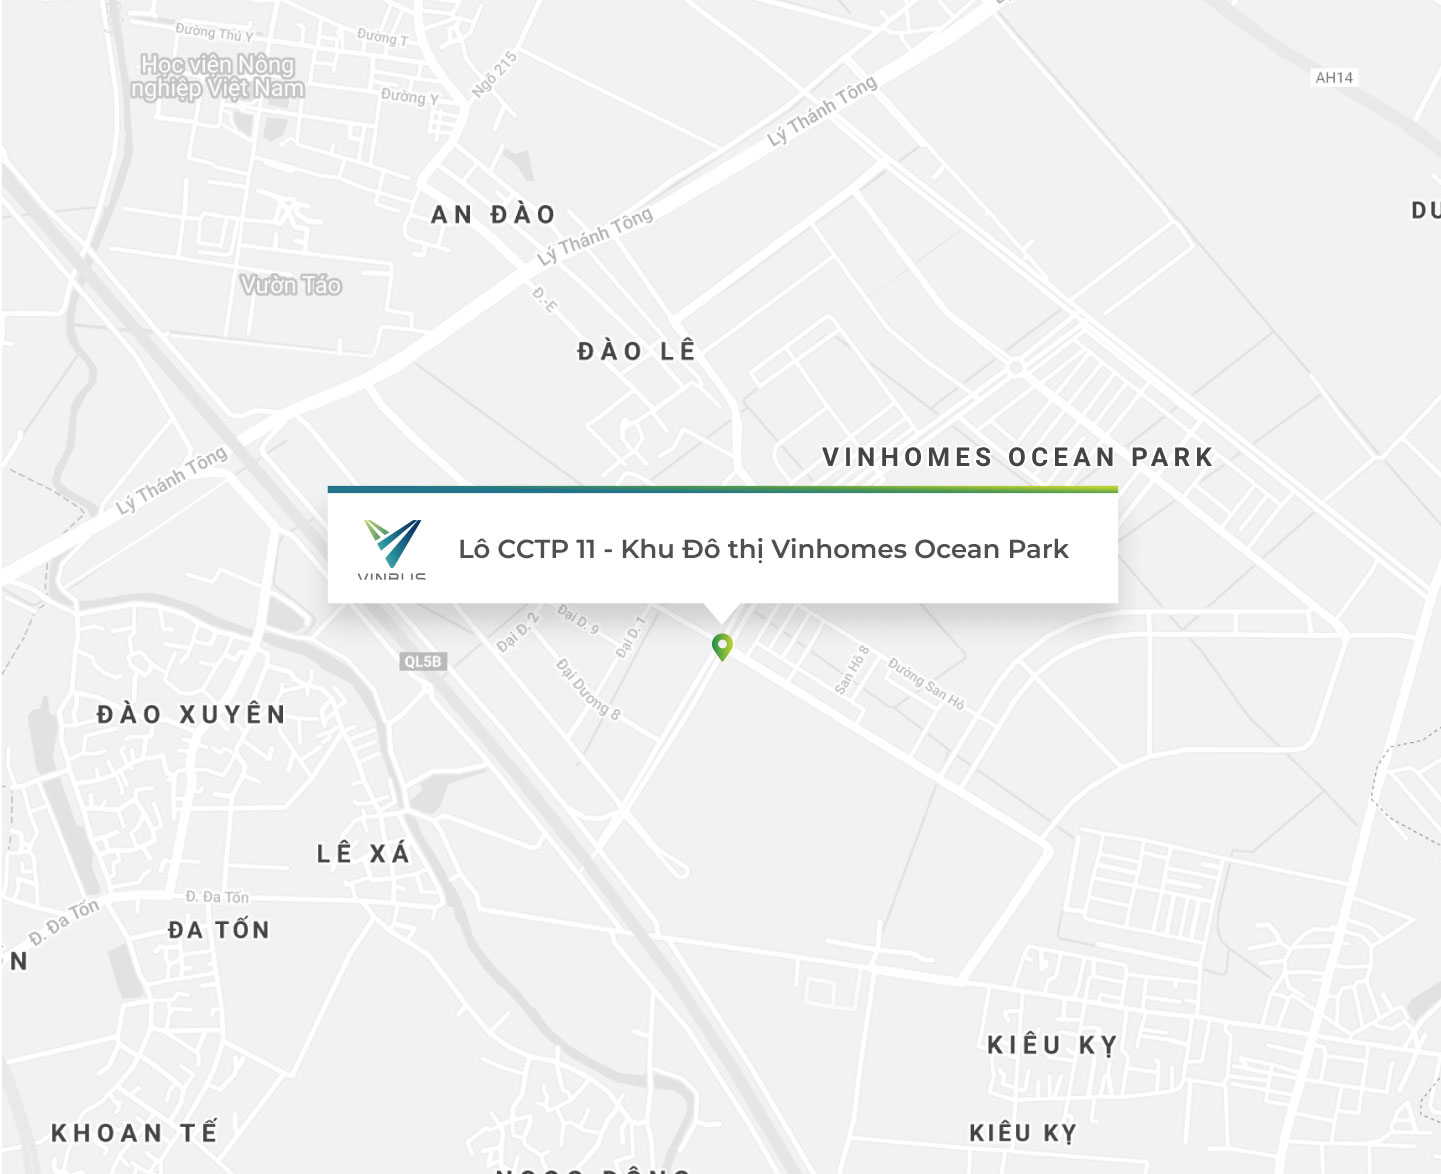 Khám phá Hà Nội một cách dễ dàng với VinBus bản đồ offline. Đặt vé trực tuyến hoặc đơn giản là tra cứu thông tin về tuyến đường và thư giãn trên xe buýt thông minh - tất cả từ cái bản đồ này.